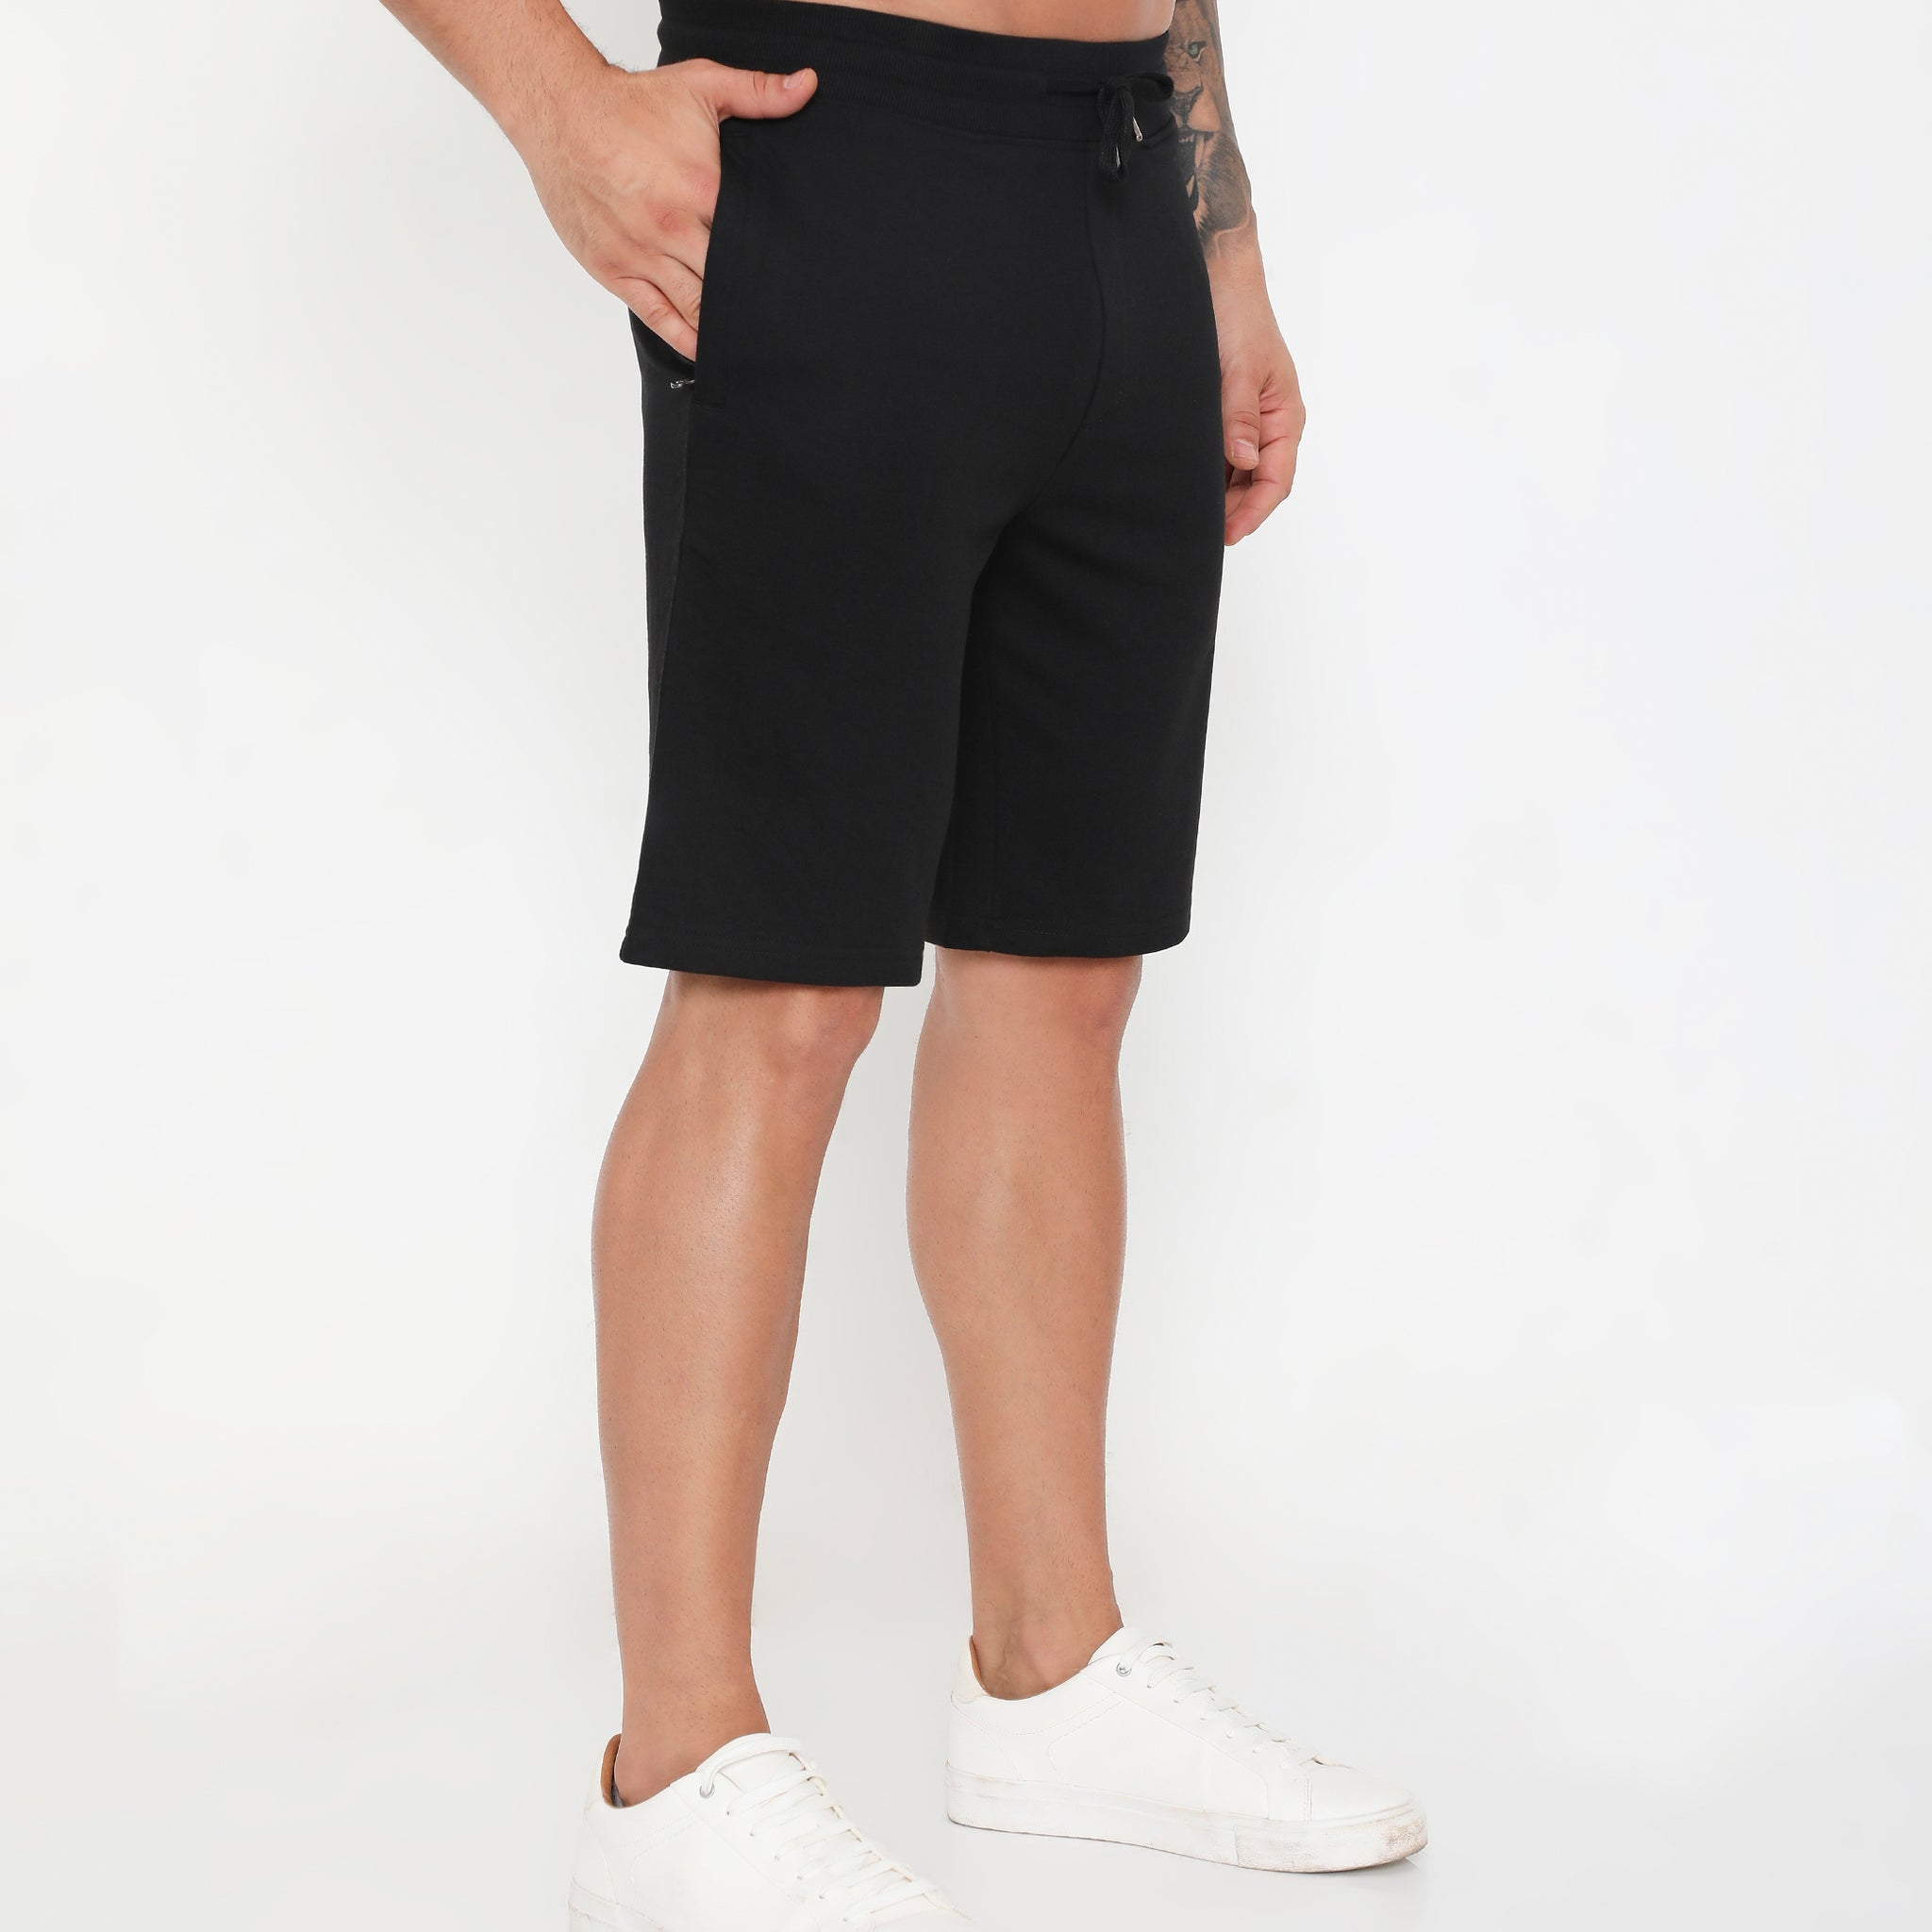 Men 002 Active Cotton Shorts- Black